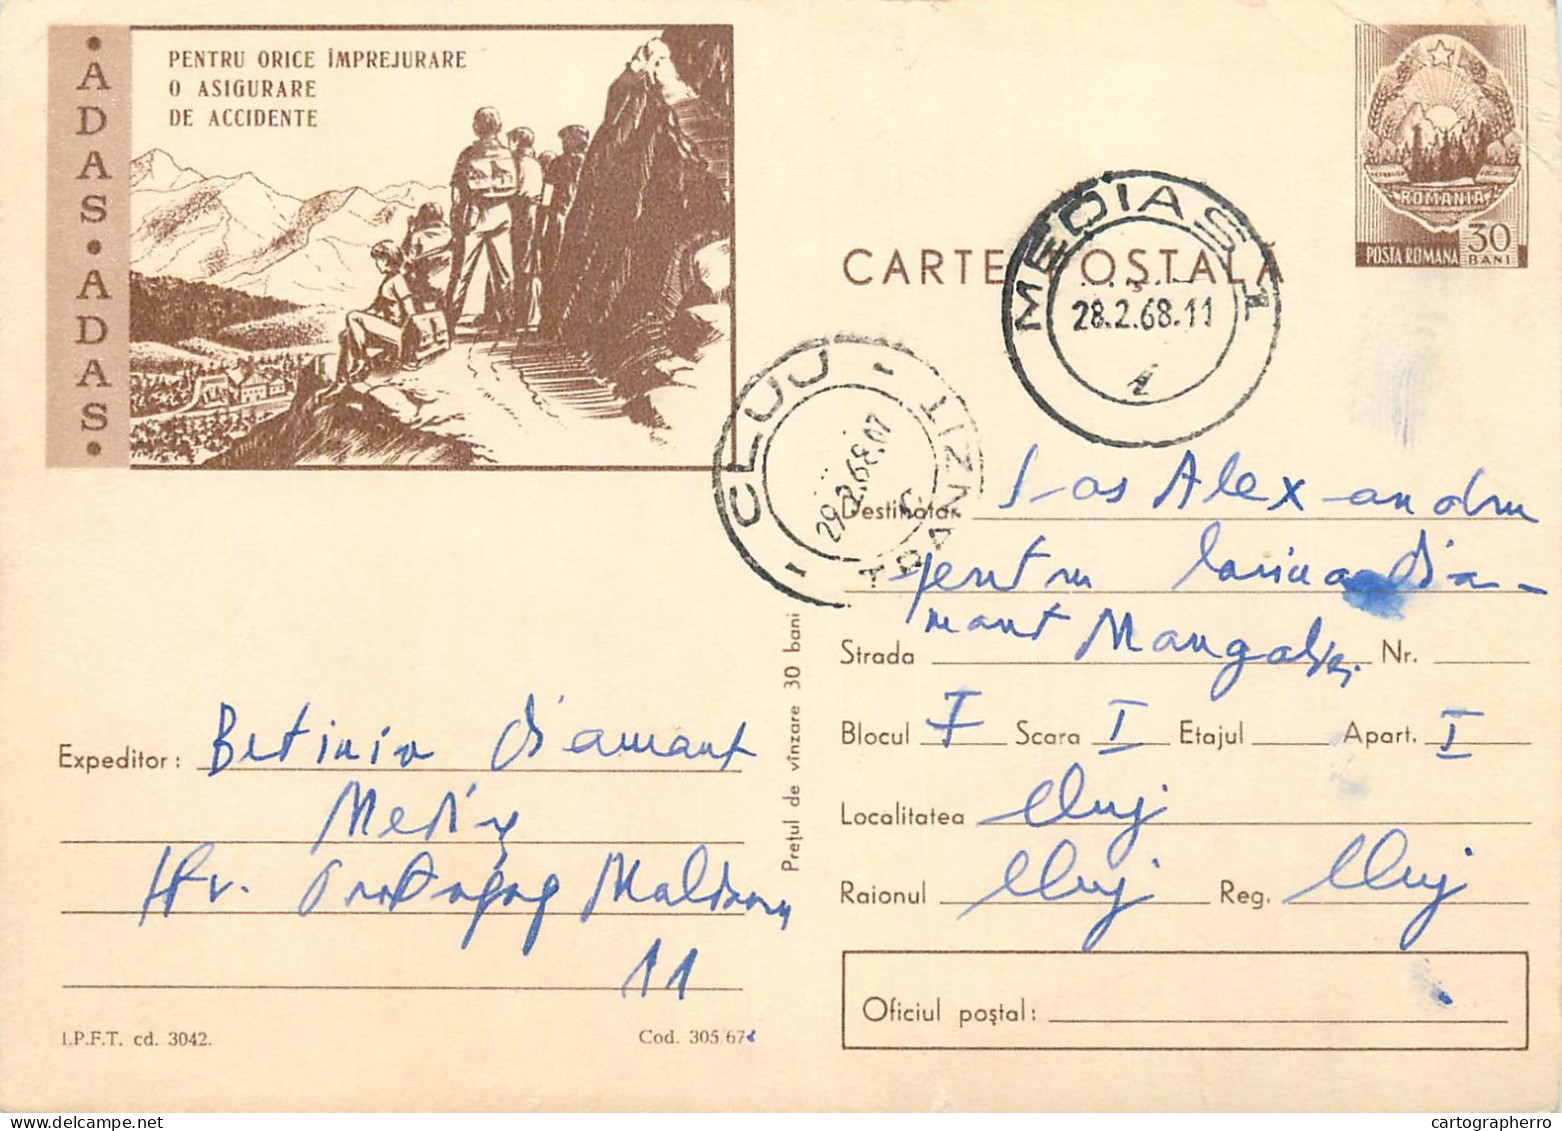 Postal Stationery Postcard Romania ADAS Asigurare - Romania